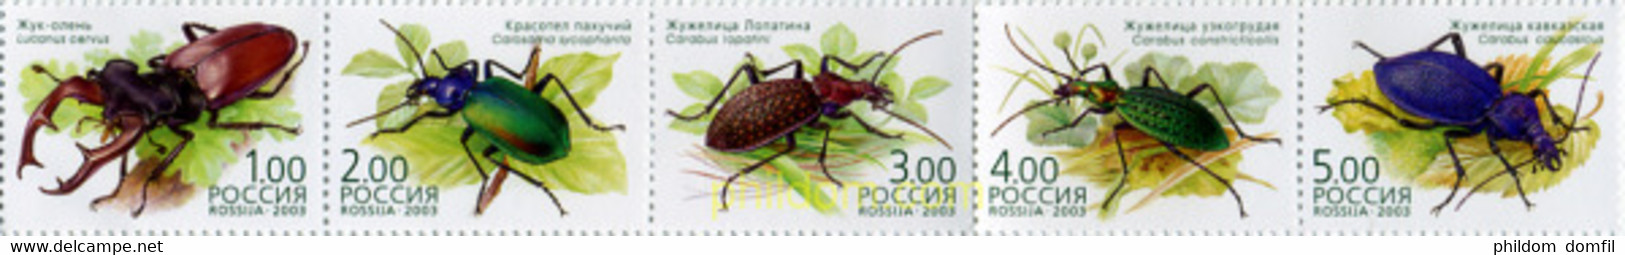 358213 MNH RUSIA 2003 INSECTOS - Usados